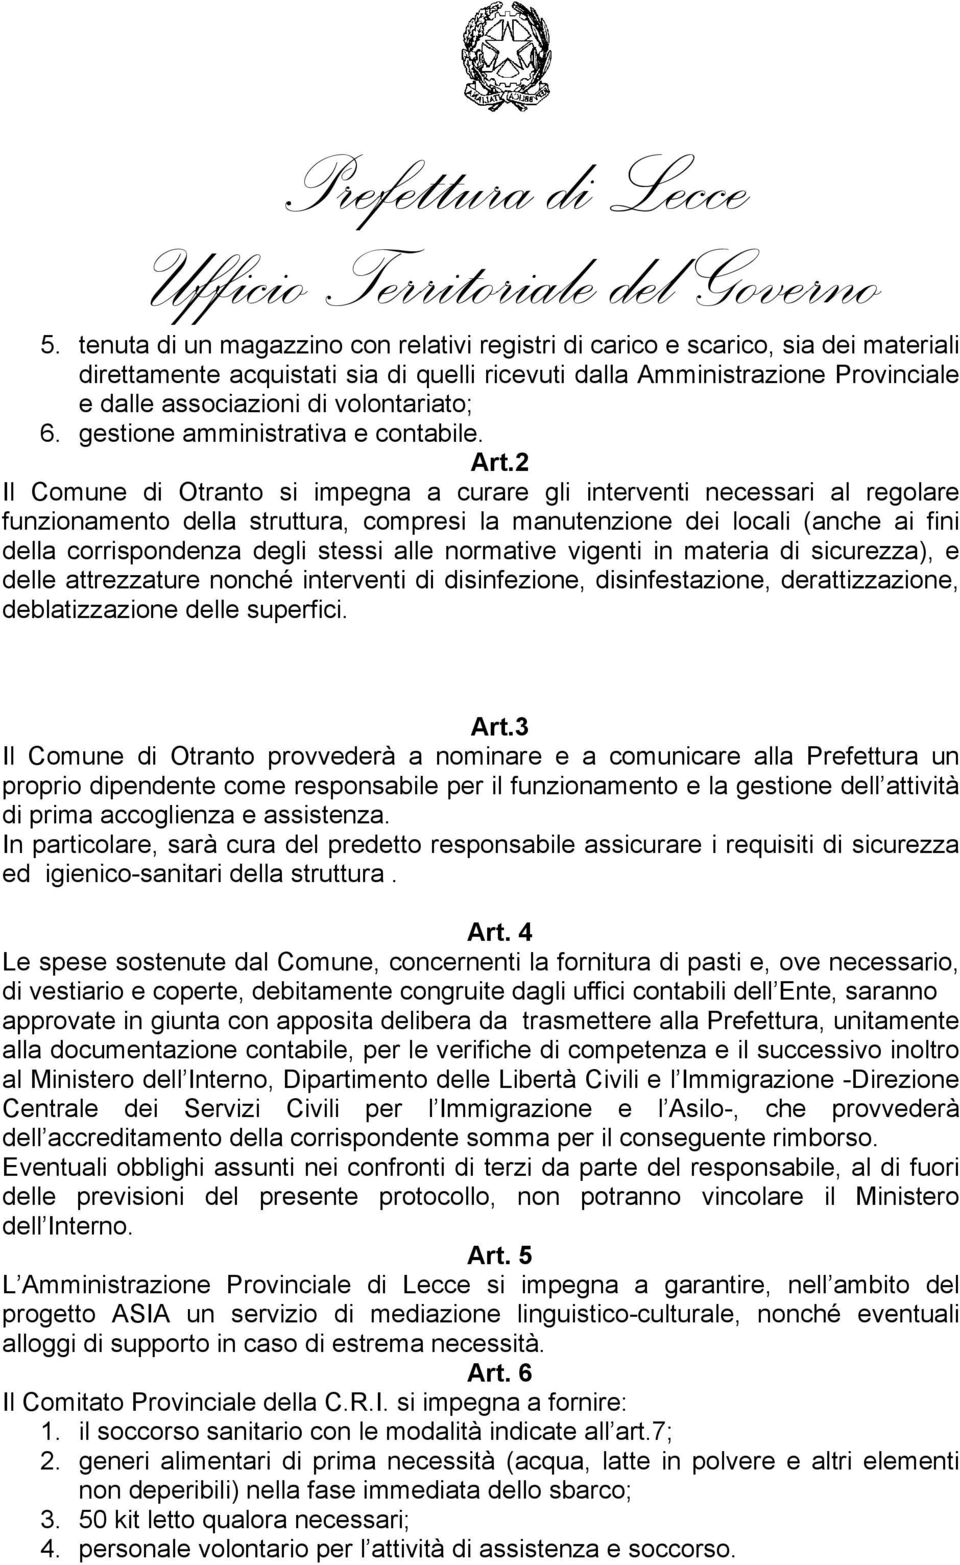 2 Il Comune di Otranto si impegna a curare gli interventi necessari al regolare funzionamento della struttura, compresi la manutenzione dei locali (anche ai fini della corrispondenza degli stessi